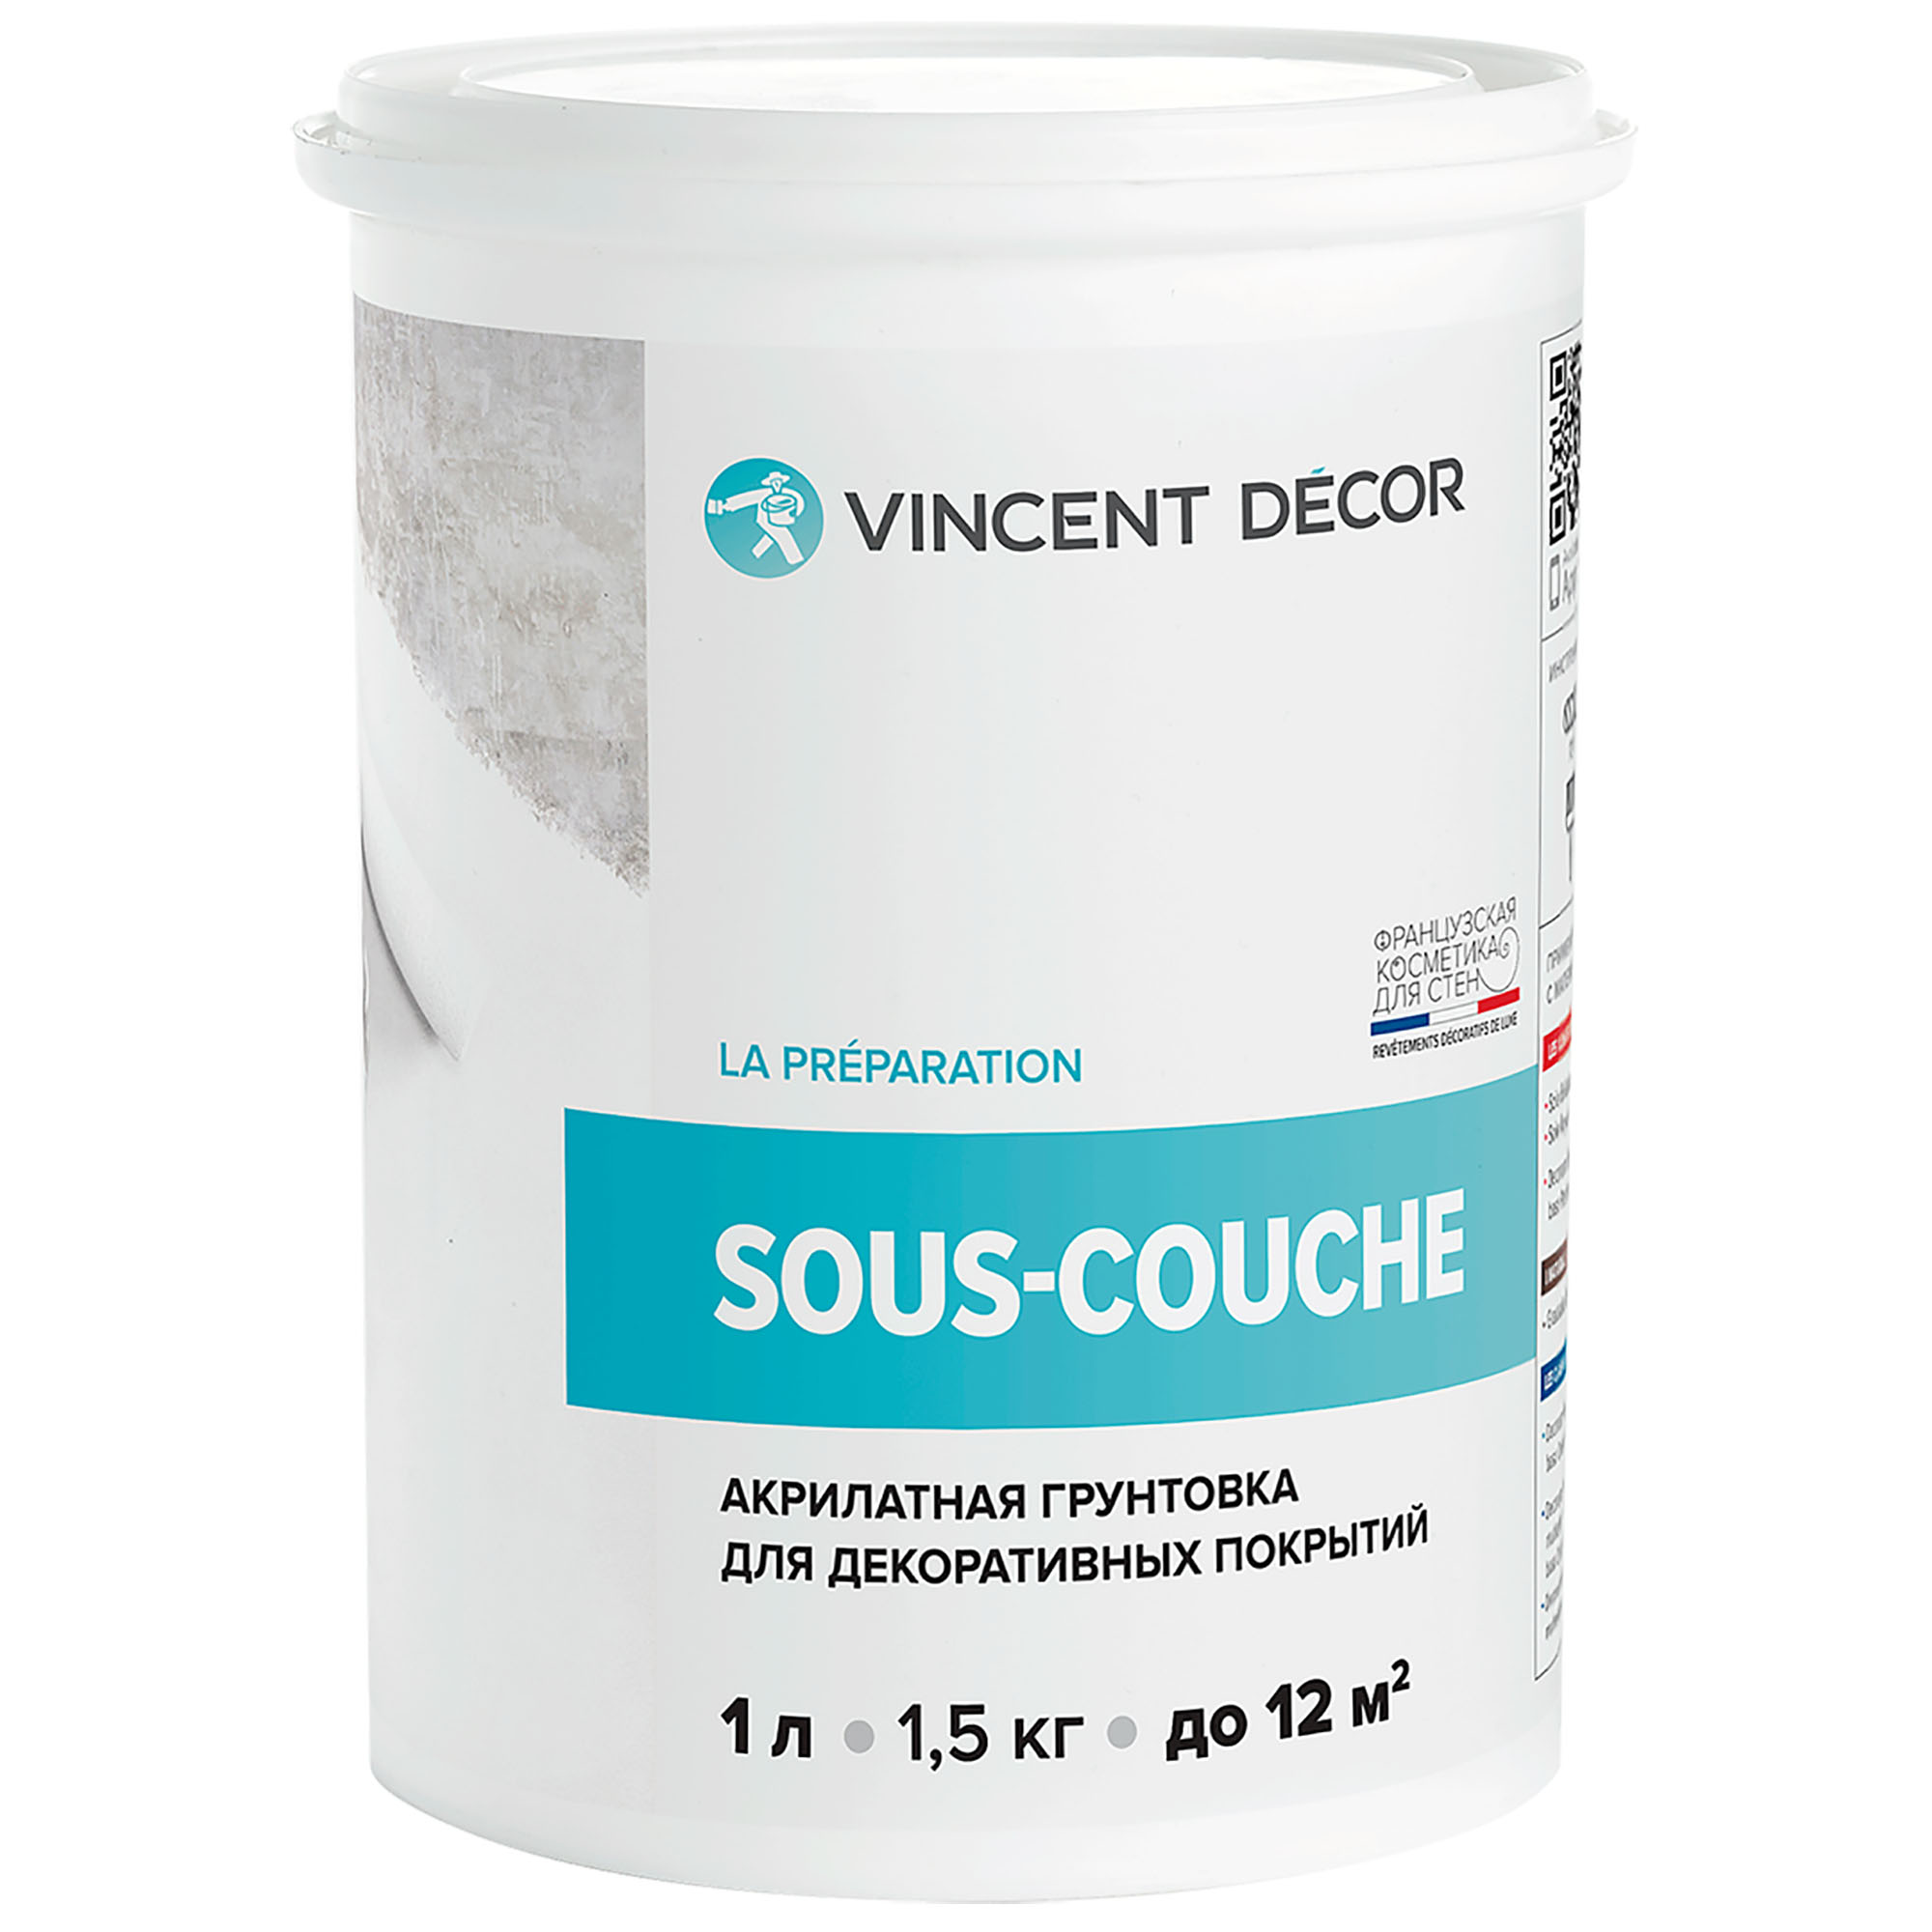 Грунтовка для декоративных покрытий Vincent Decor Sous-couche 1 л грунтовка для декоративных покрытий vincent decor sous couсhe 2 5 л